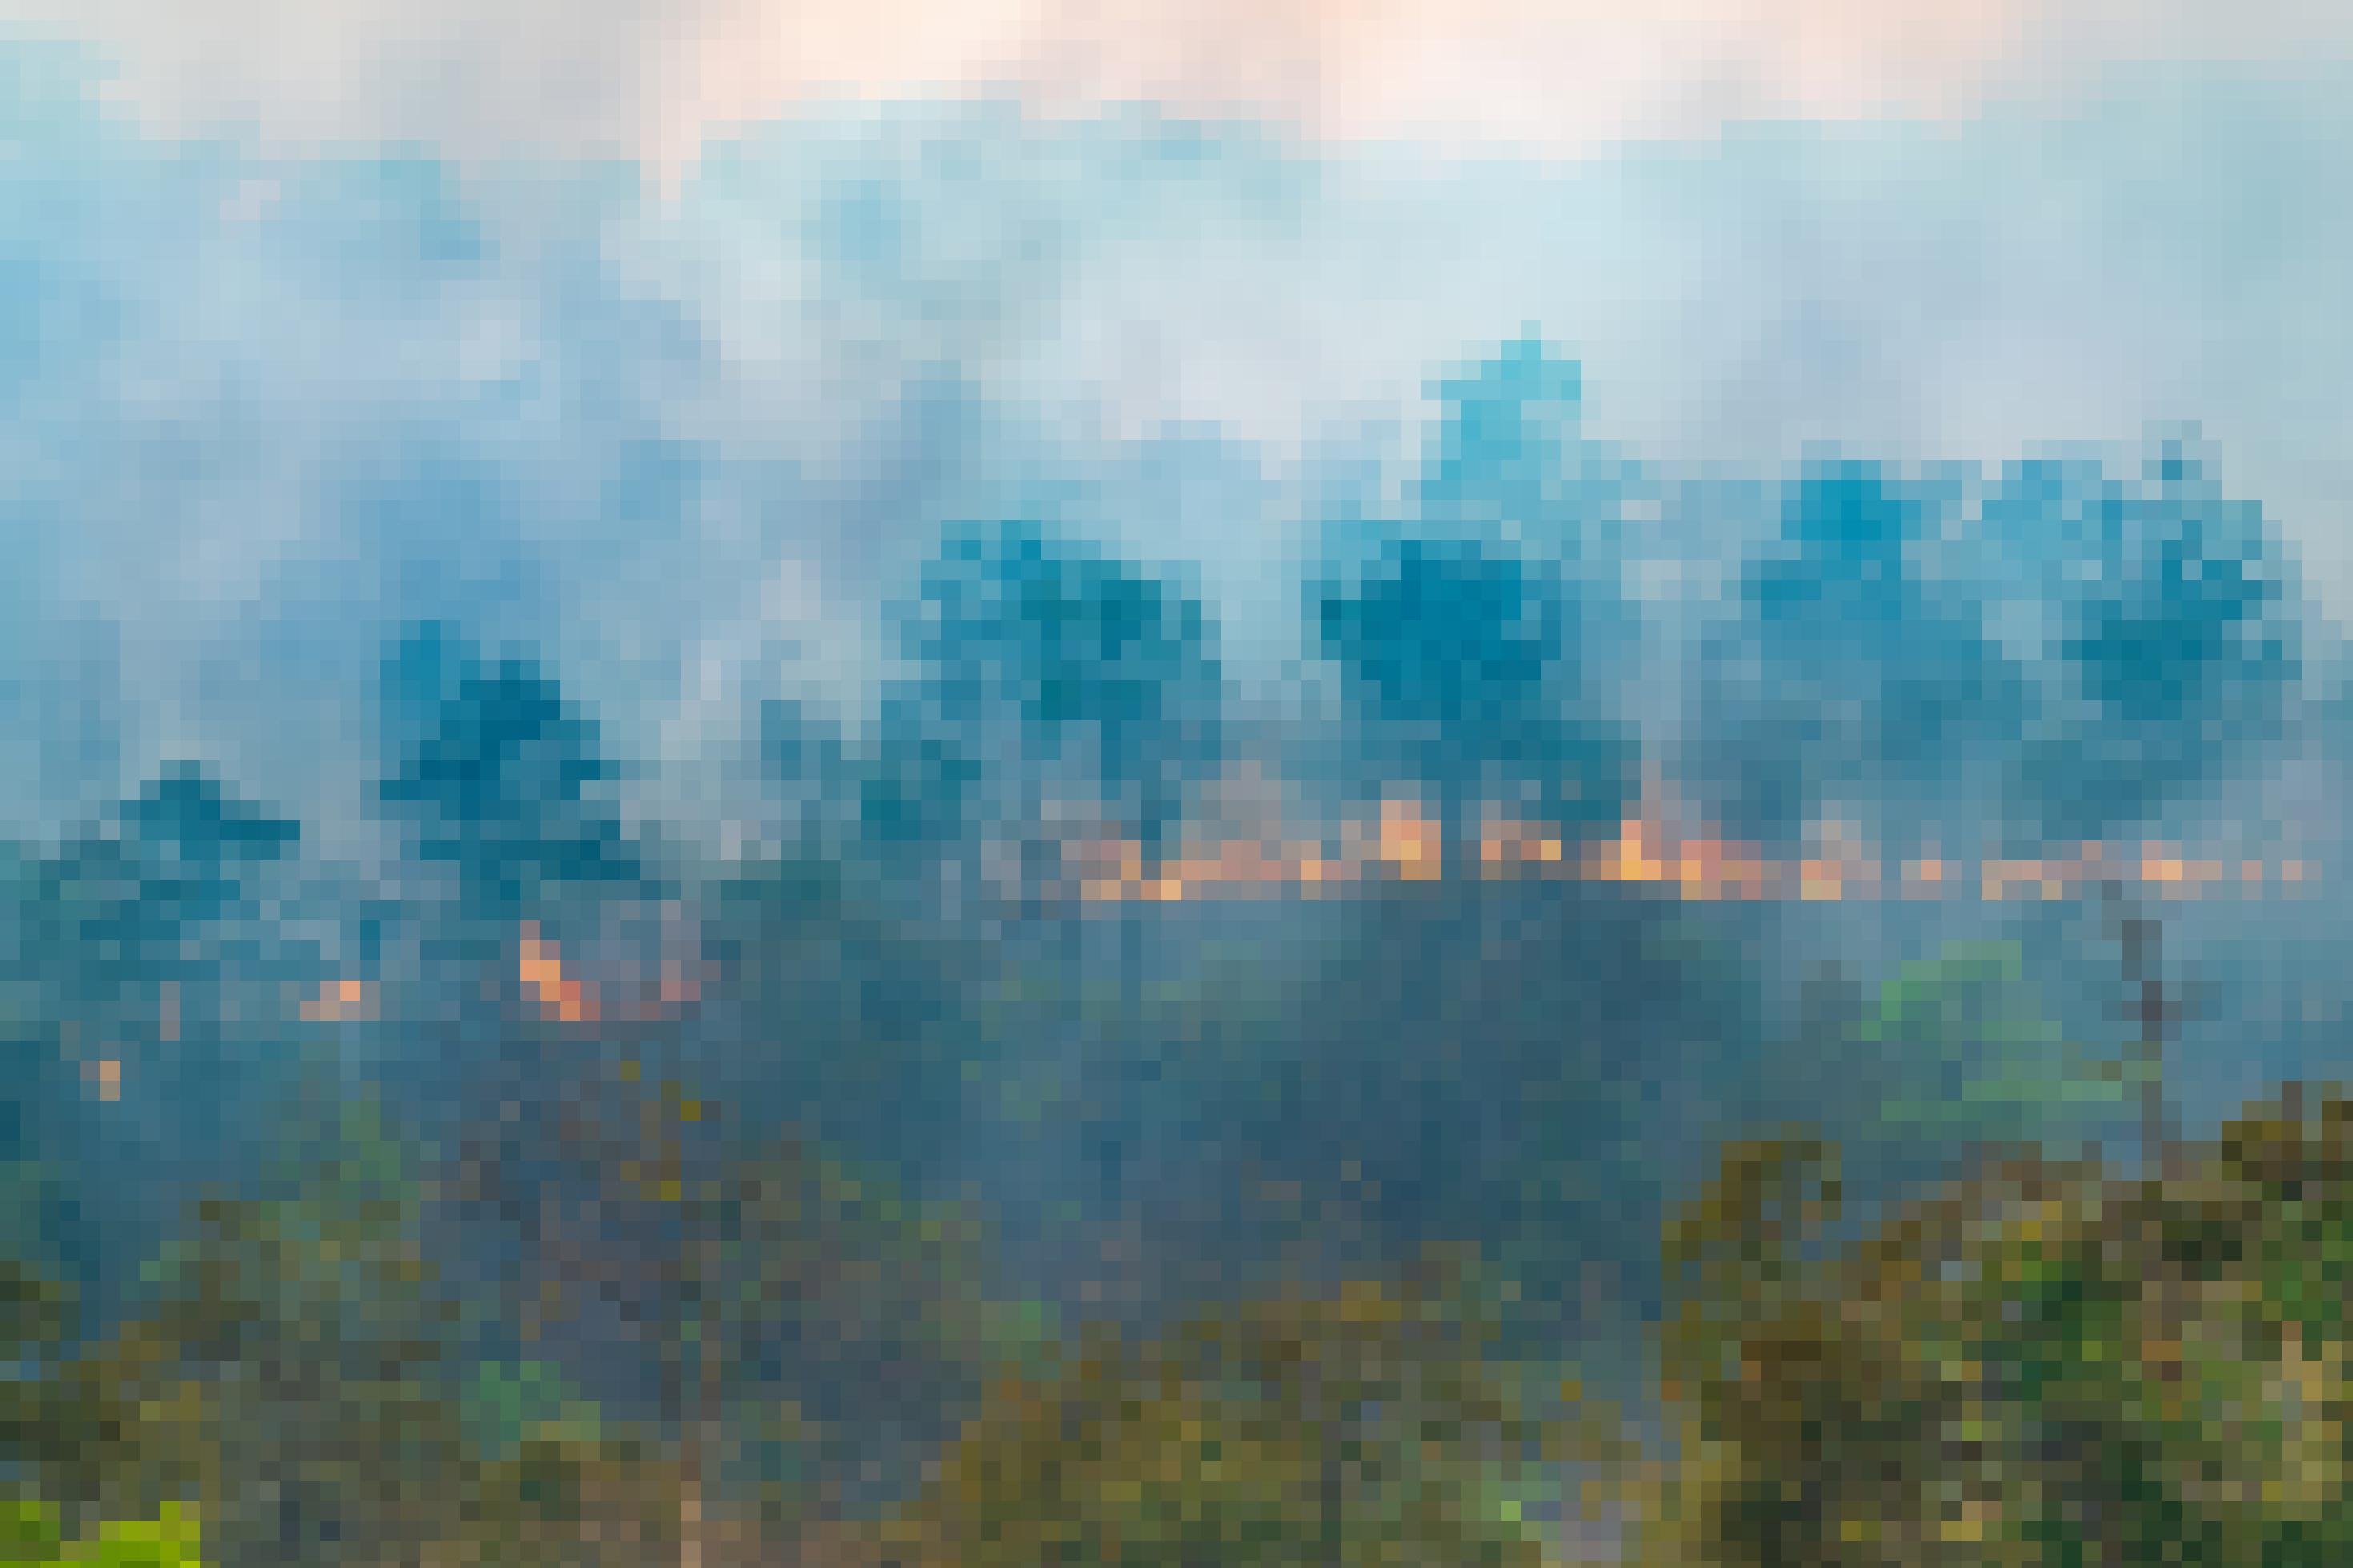 Das Foto zeigt einen Regenwald in Flammen: Vorne grüne Bäume, dahinter Silhouetten von Bäumen, eine breite Feuerfront und dicht aufsteigende Rauchschwaden.